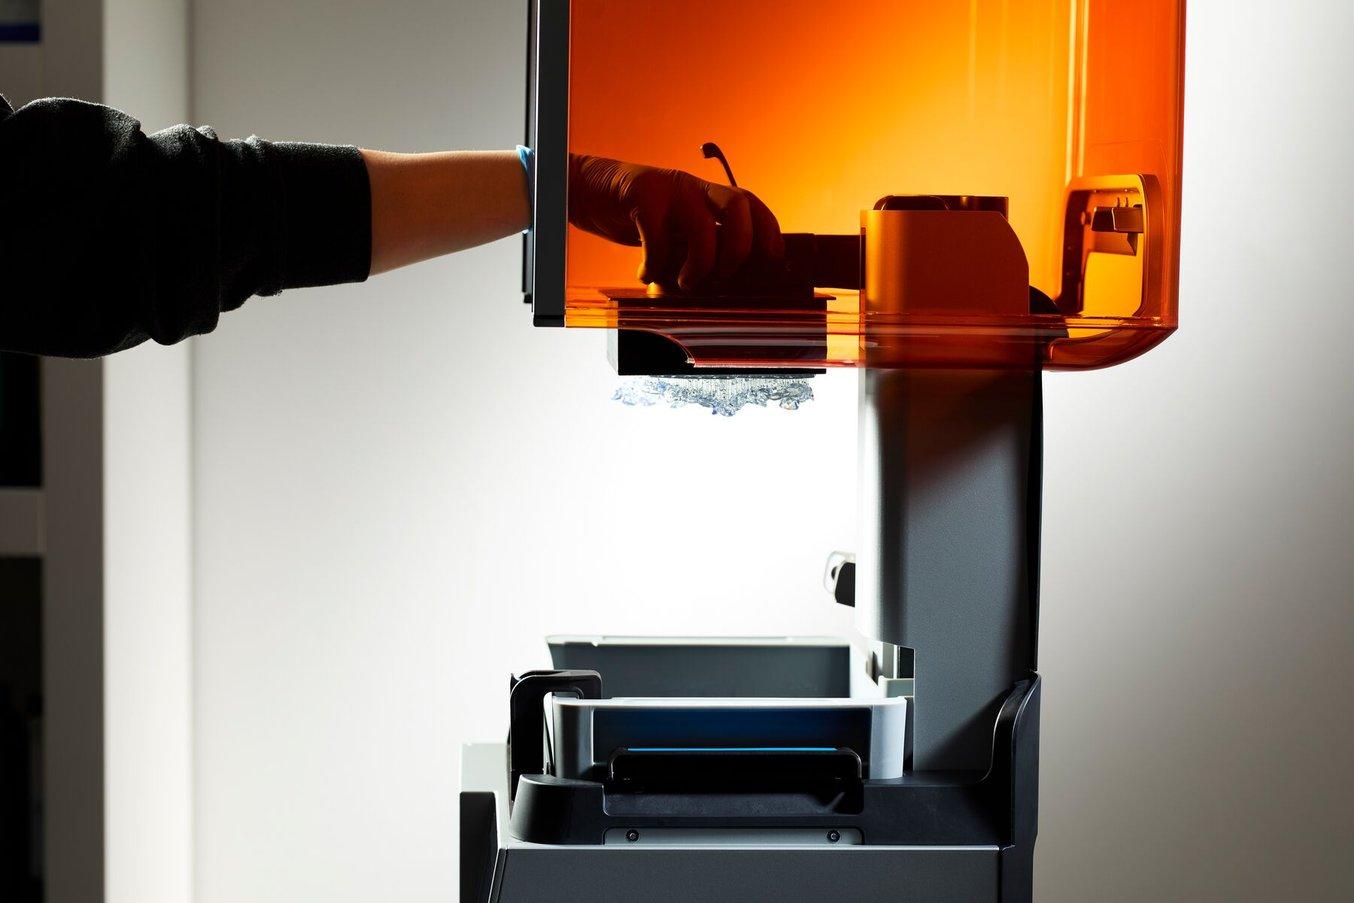 Person greift in einen offenen Form 4B und entfernt die Bauplattform mit Drucken aus dem 3D-Drucker